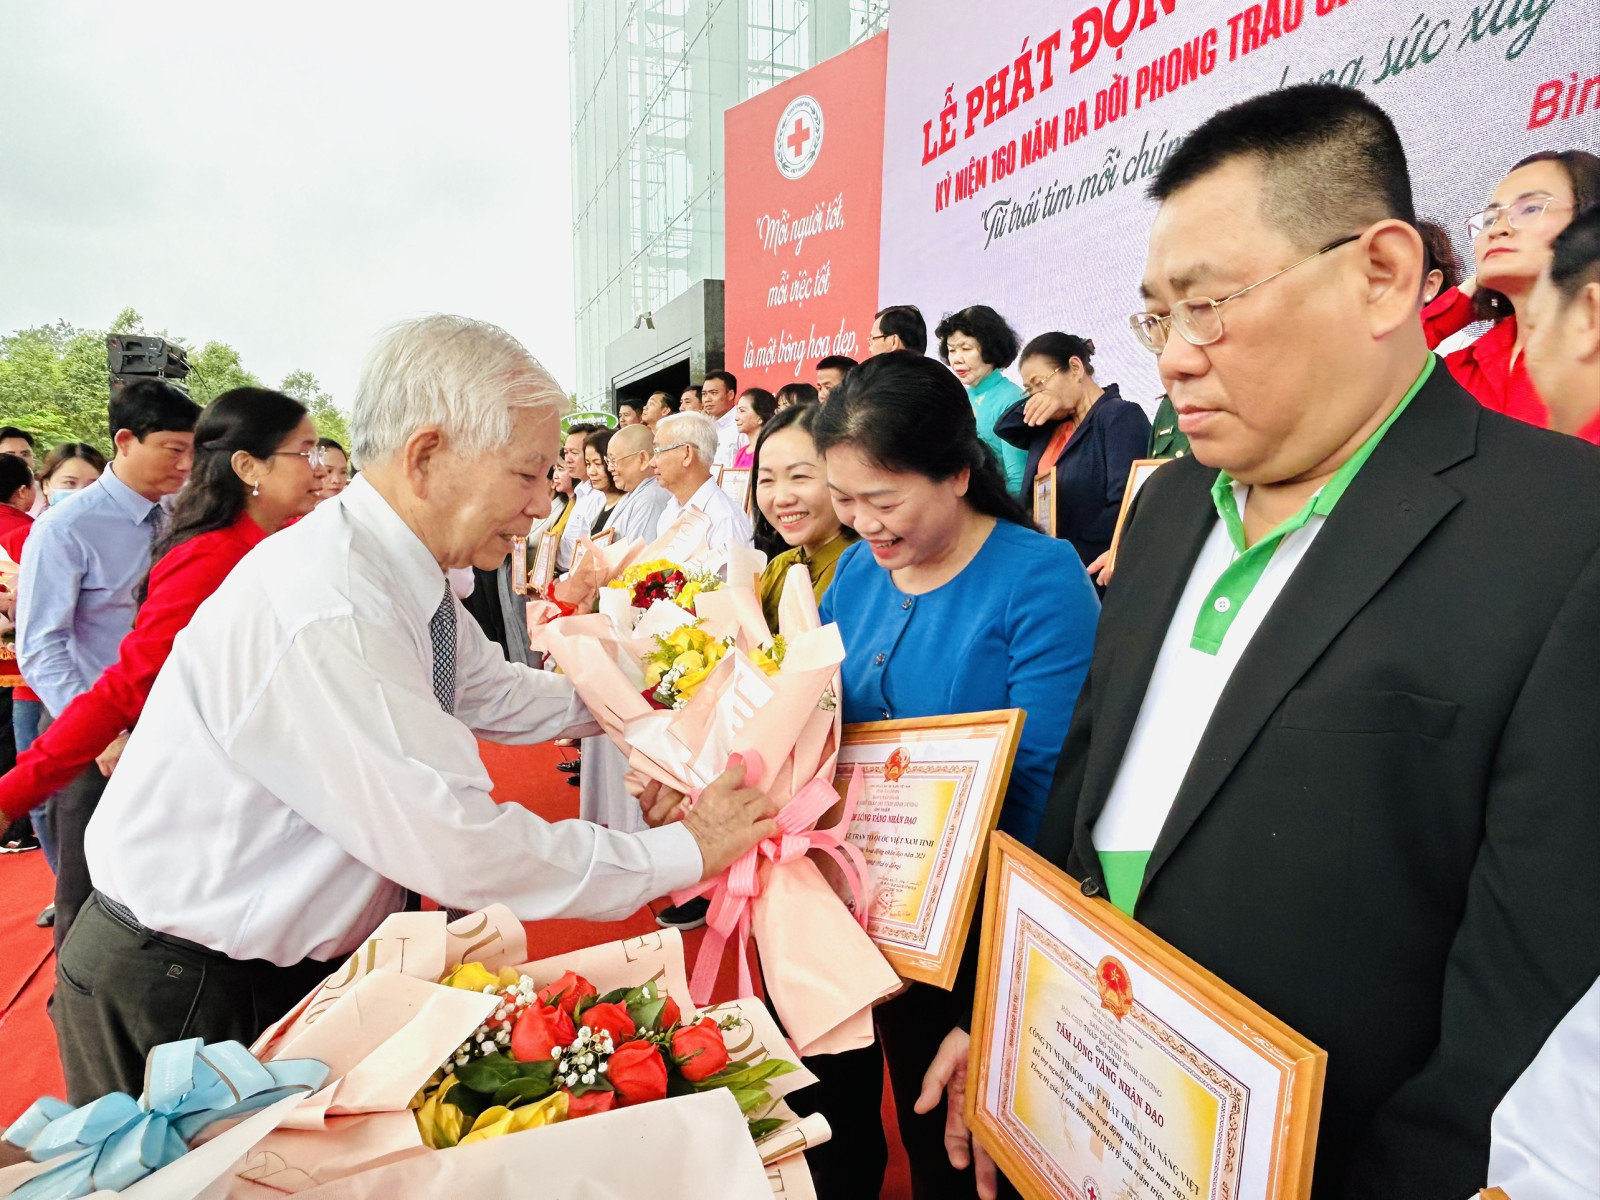 Nguyên Chủ tịch nước Nguyễn Minh Triết tặng hoa các đơn vị, doanh nghiệp, nhà hảo tâm đã ủng hộ nguồn lực cho công tác nhân đạo.